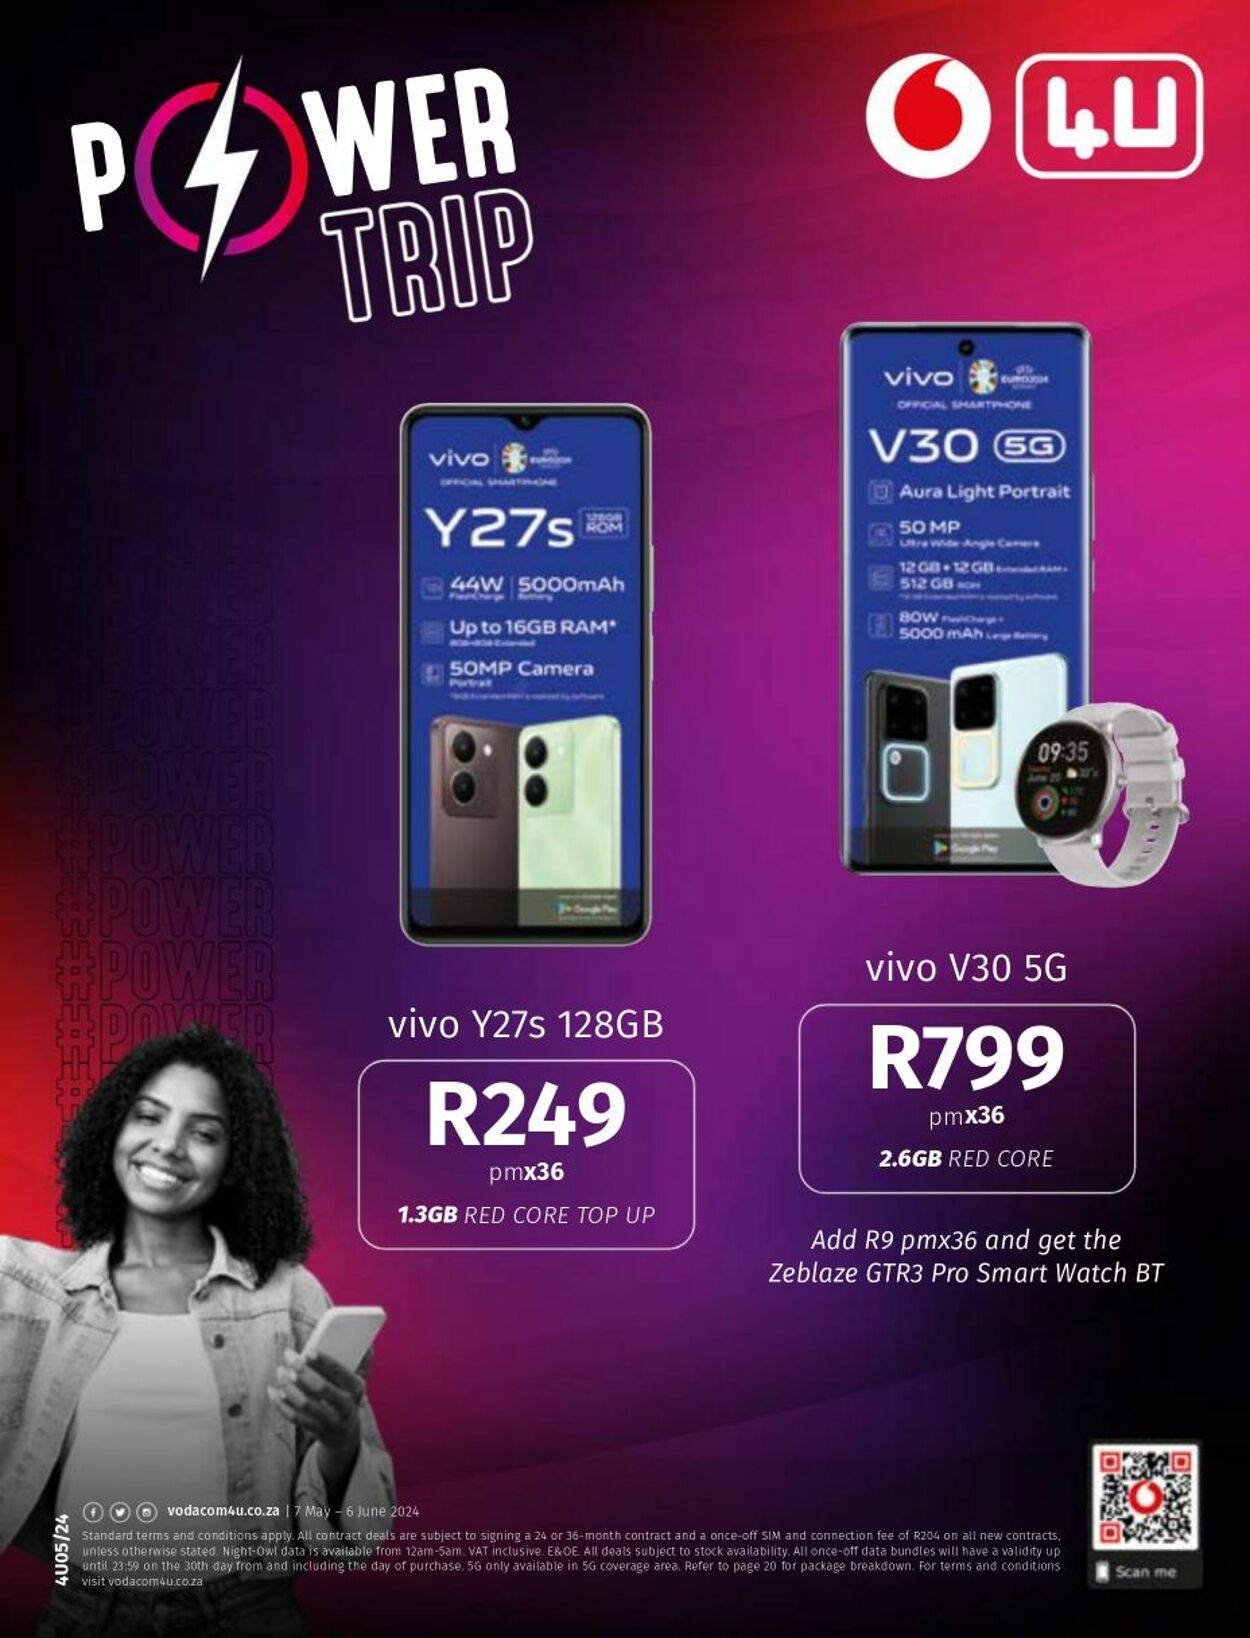 Vodacom Promotional specials